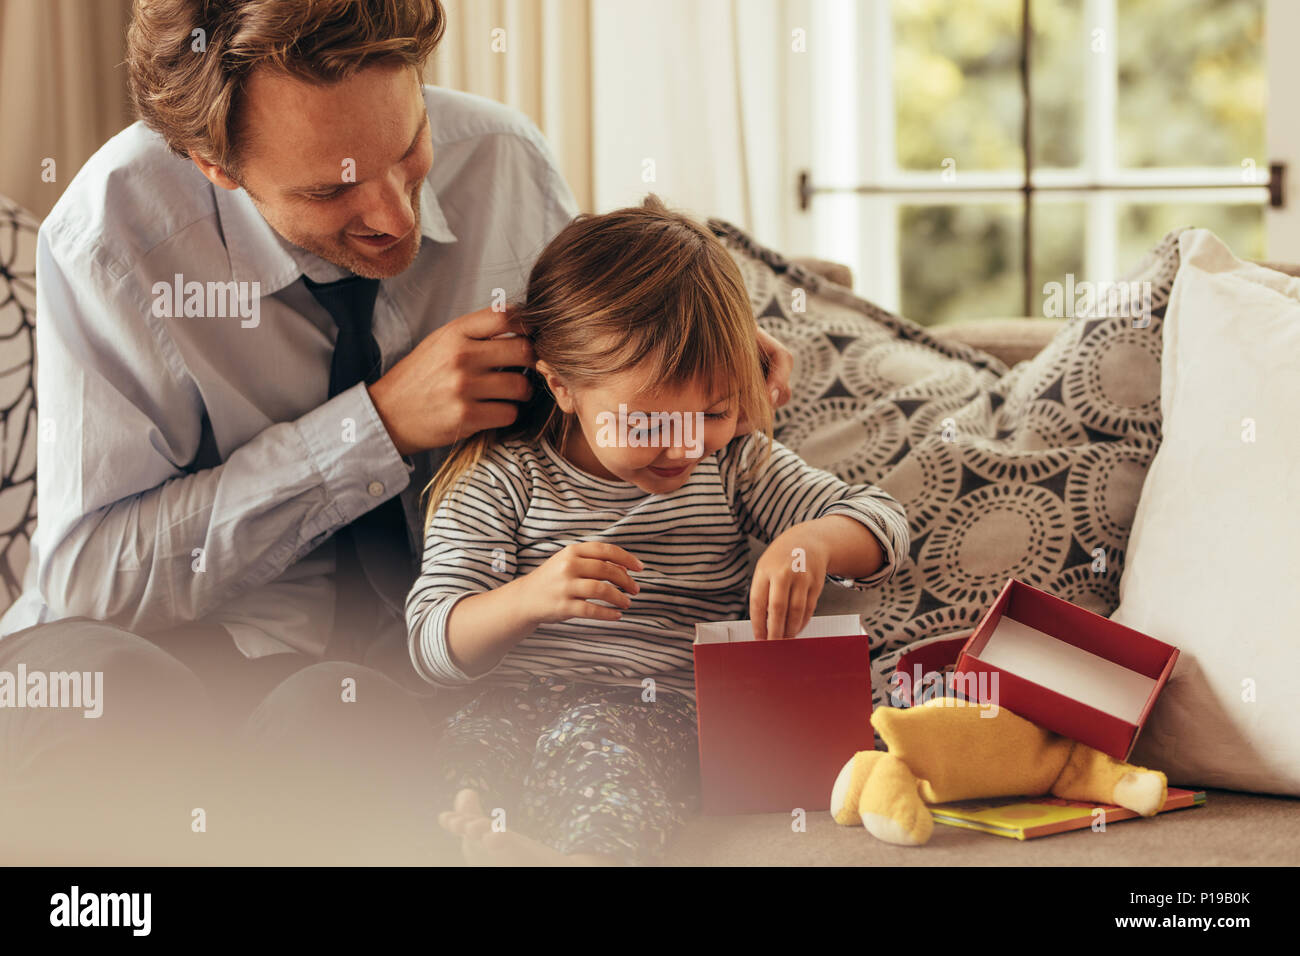 Vater und Tochter sitzen auf einem Sofa Eröffnung einer Geschenkbox. Kleines Mädchen erforscht die Geschenkbox, während ihr Vater auf aussieht. Stockfoto